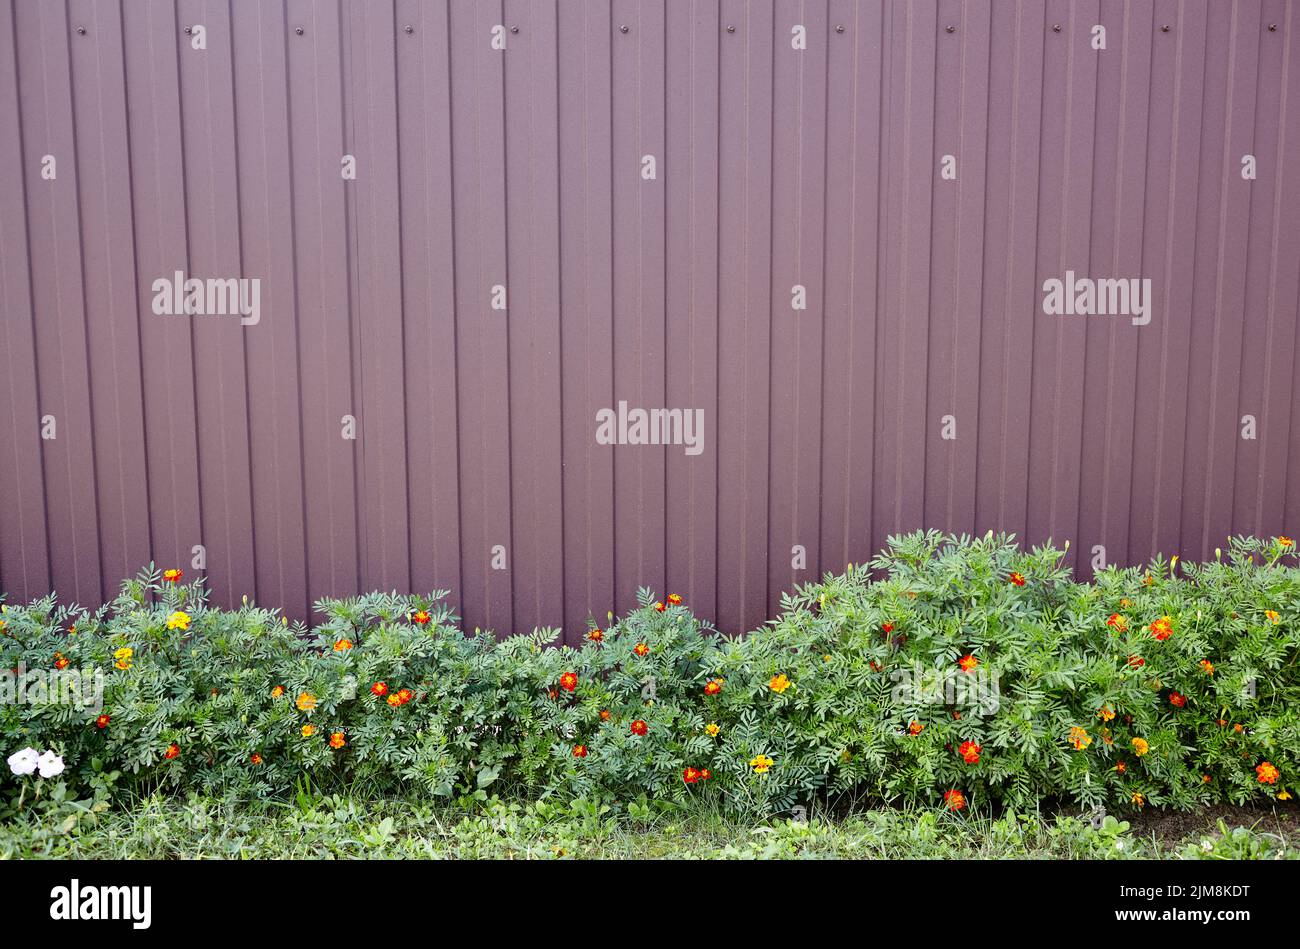 Clôture métallique d'une maison dans le quartier de banlieue, à proximité. Paysage rural fleurs, herbe et clôture en premier plan Banque D'Images